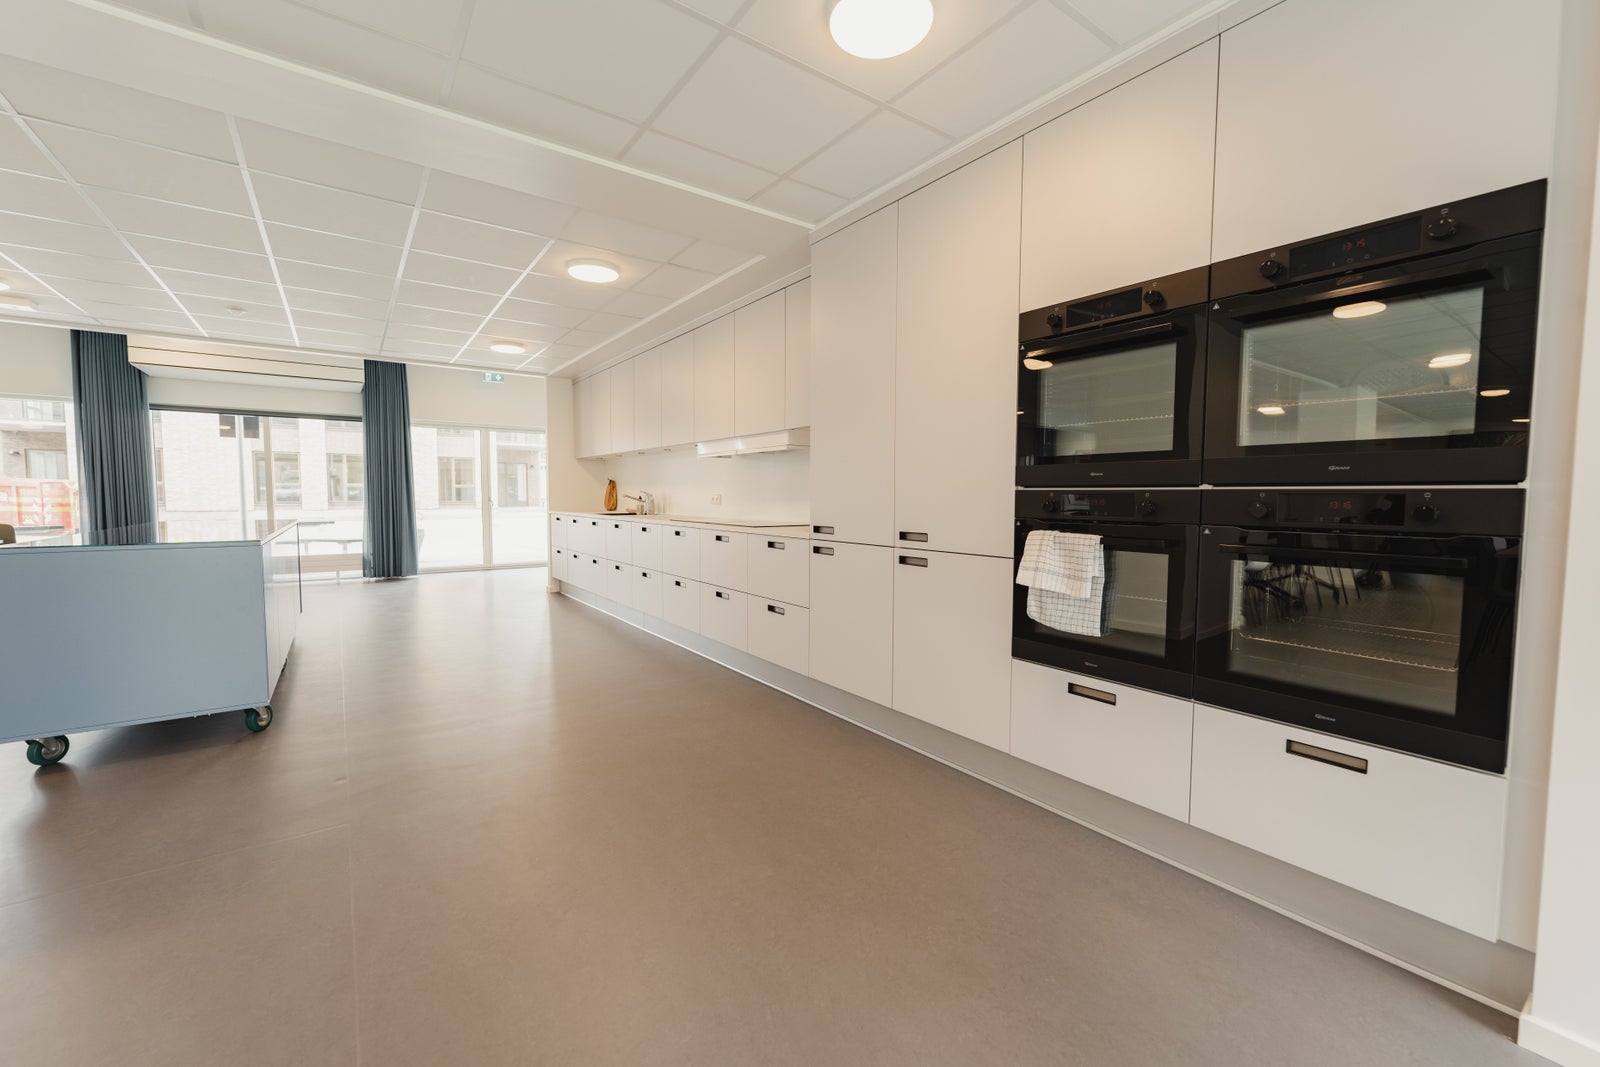 1 værelses lejlighed i Odense V 5200 på 33 kvm